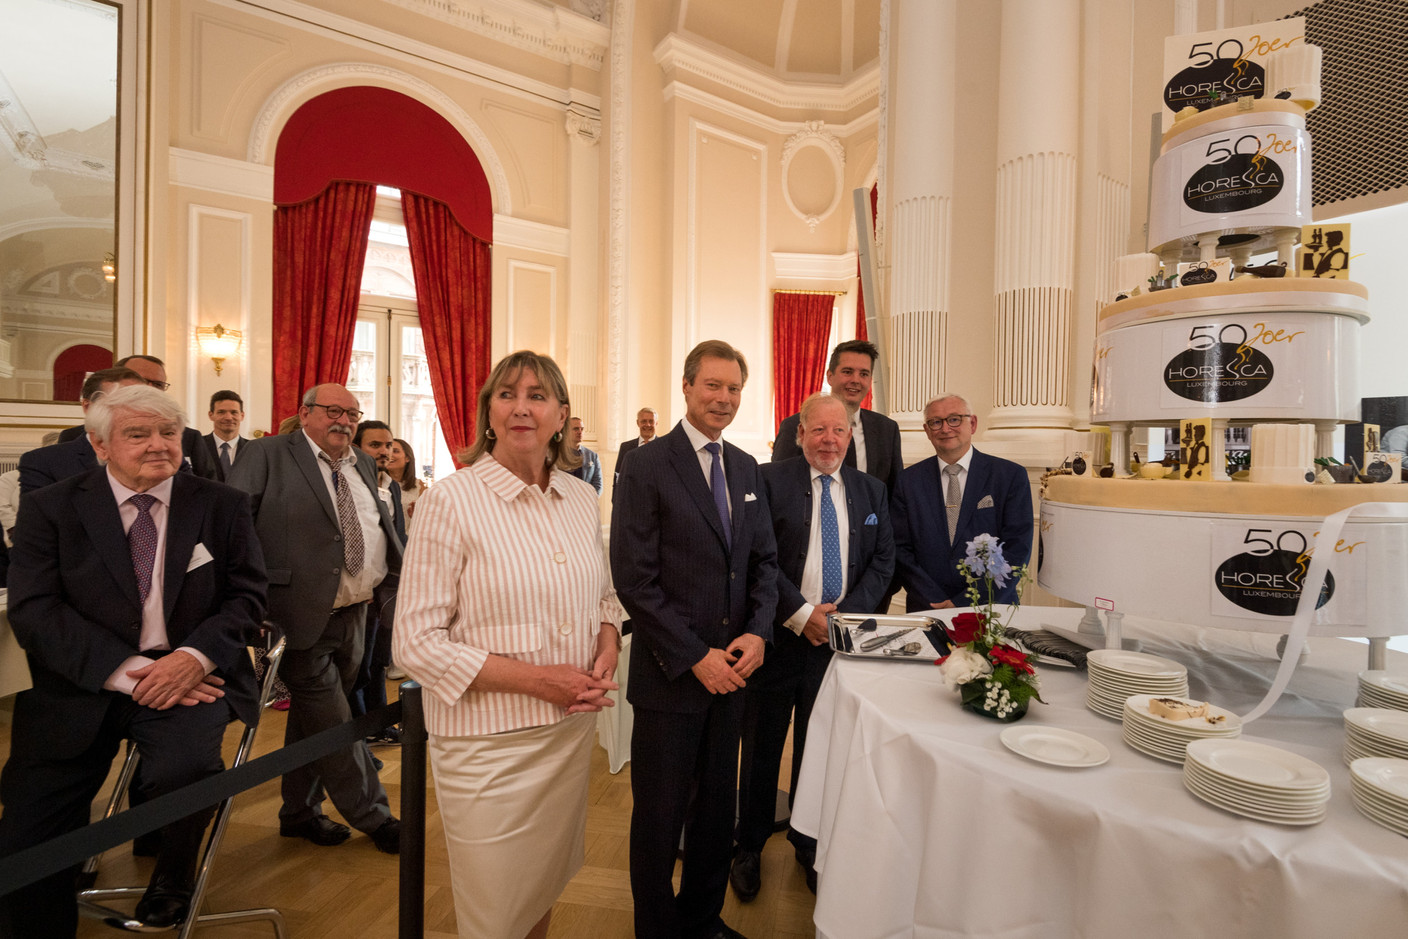 Lydie Polfer (bourgmestre de la Ville de Luxembourg), S.A.R. le Grand-Duc Henri, Alain Rix, François Koepp (CEO et secrétaire général de l’Horesca). (Photo: Bertelsmann/Nader Ghavami)